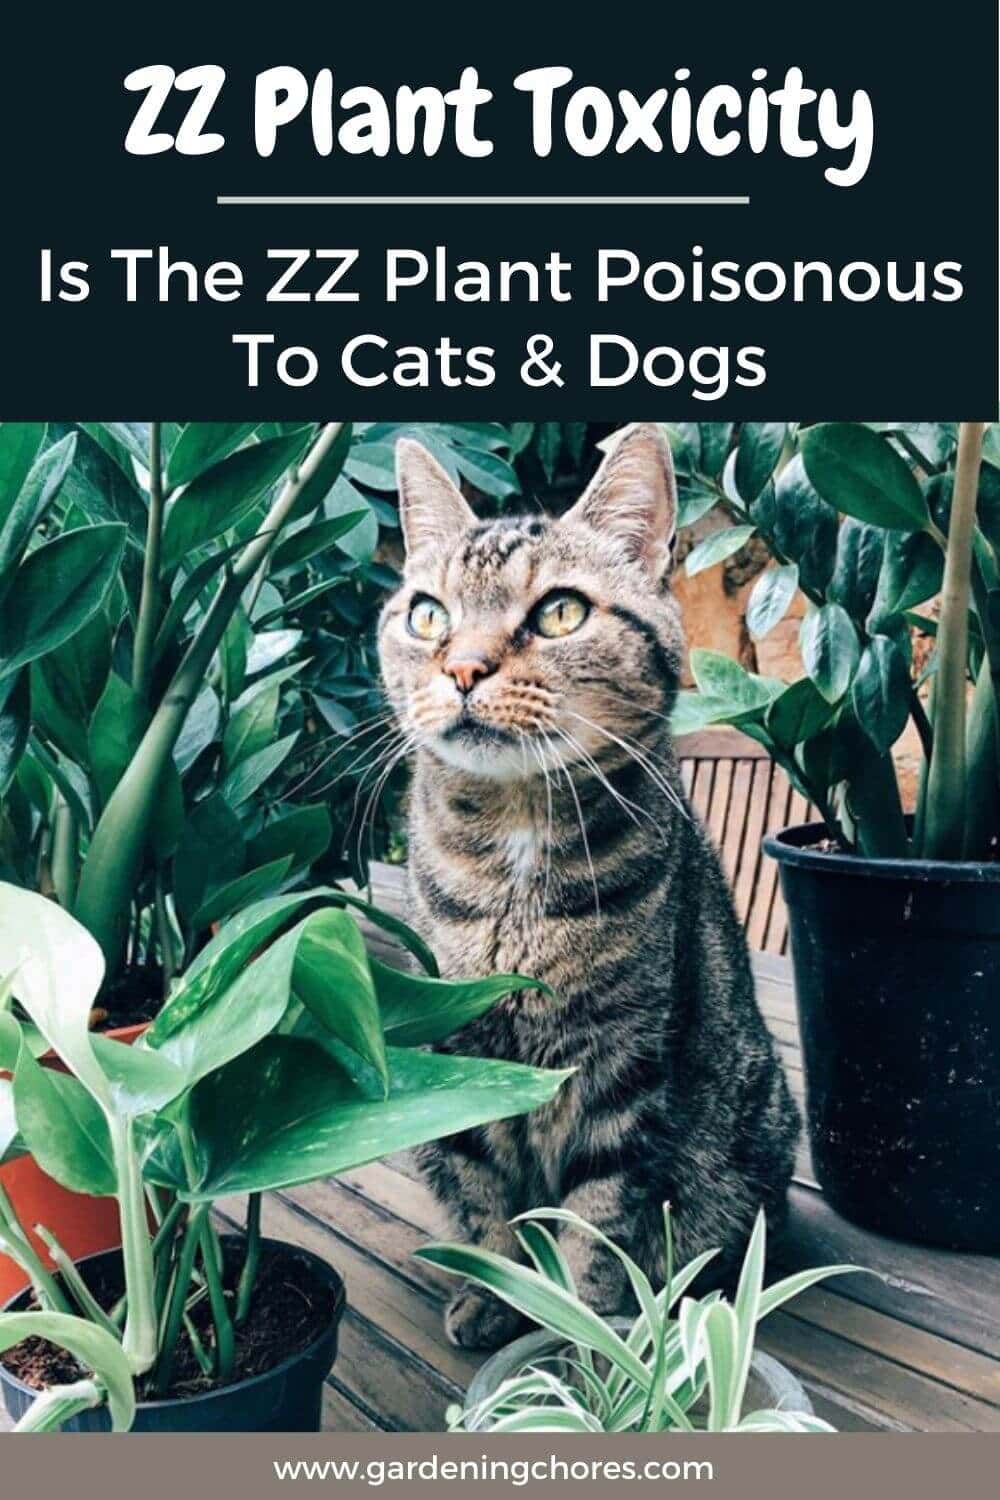  Toxicidade da planta ZZ: A planta ZZ é venenosa para gatos, cães ou crianças?